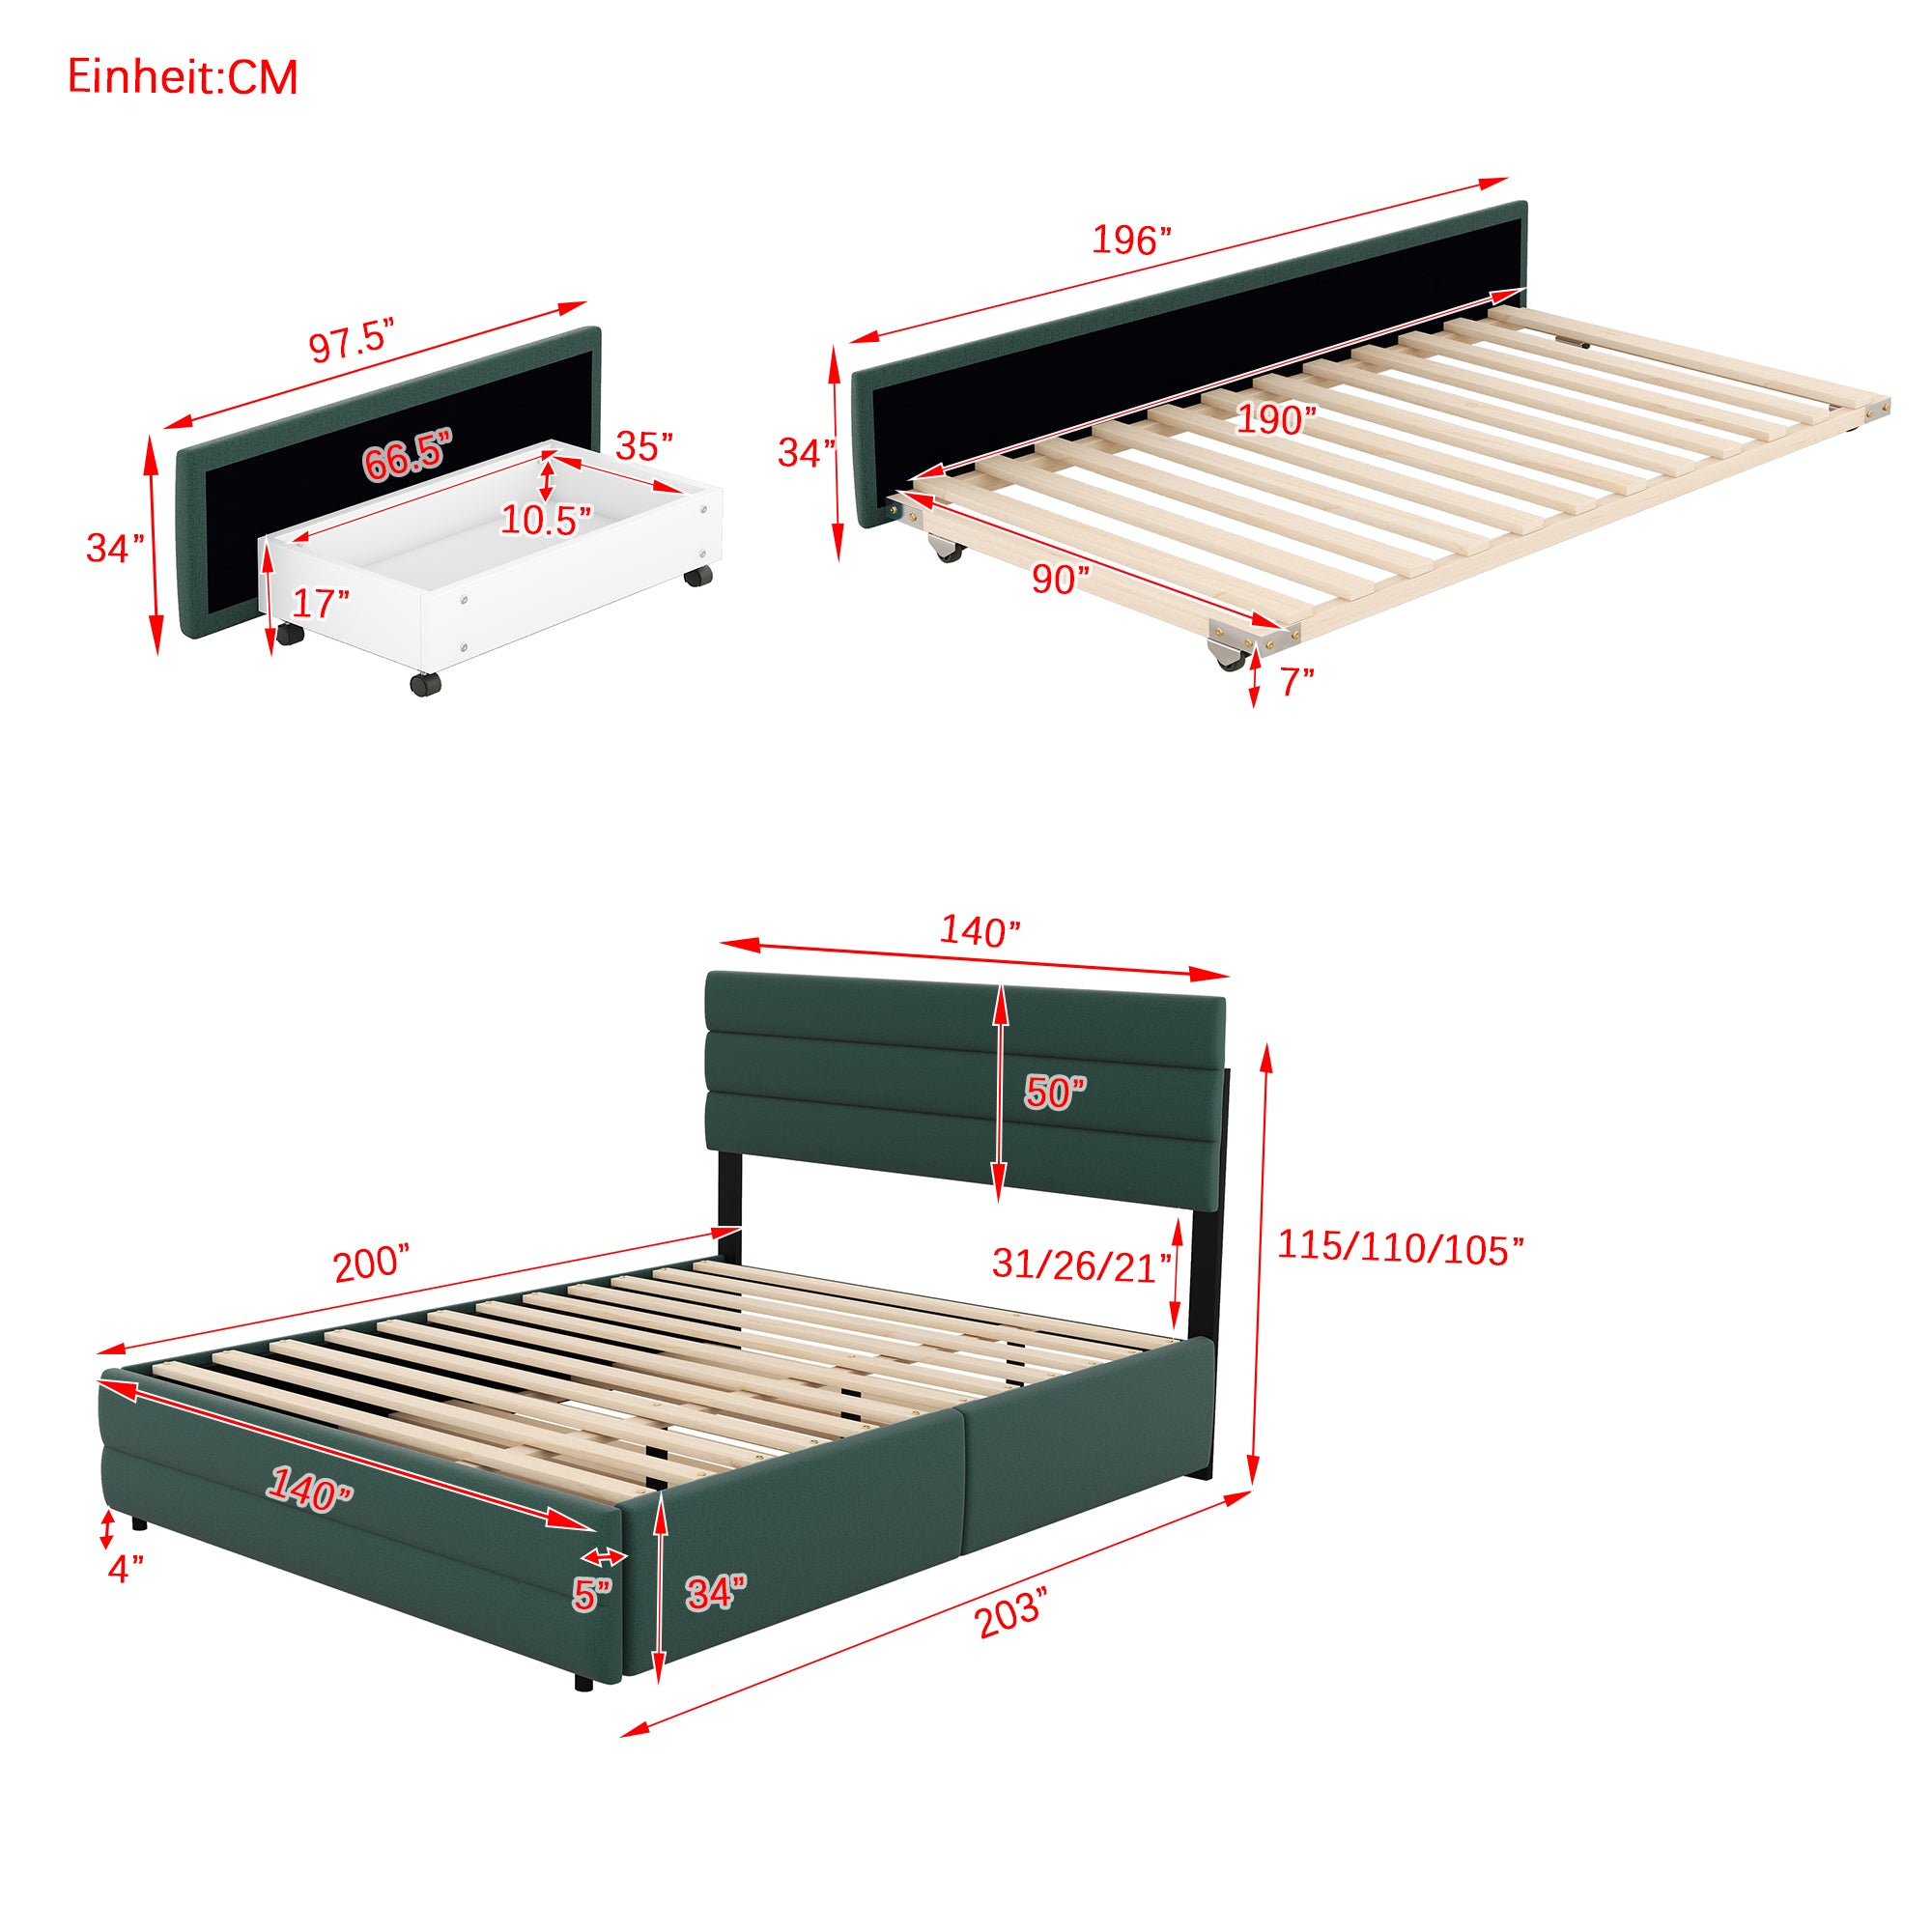 okwish 140 x 200 cm Plattformbett, gepolstertes Bett, mit Zwei-Personen-Brosche und zwei Schubladen, natürliche Farbe